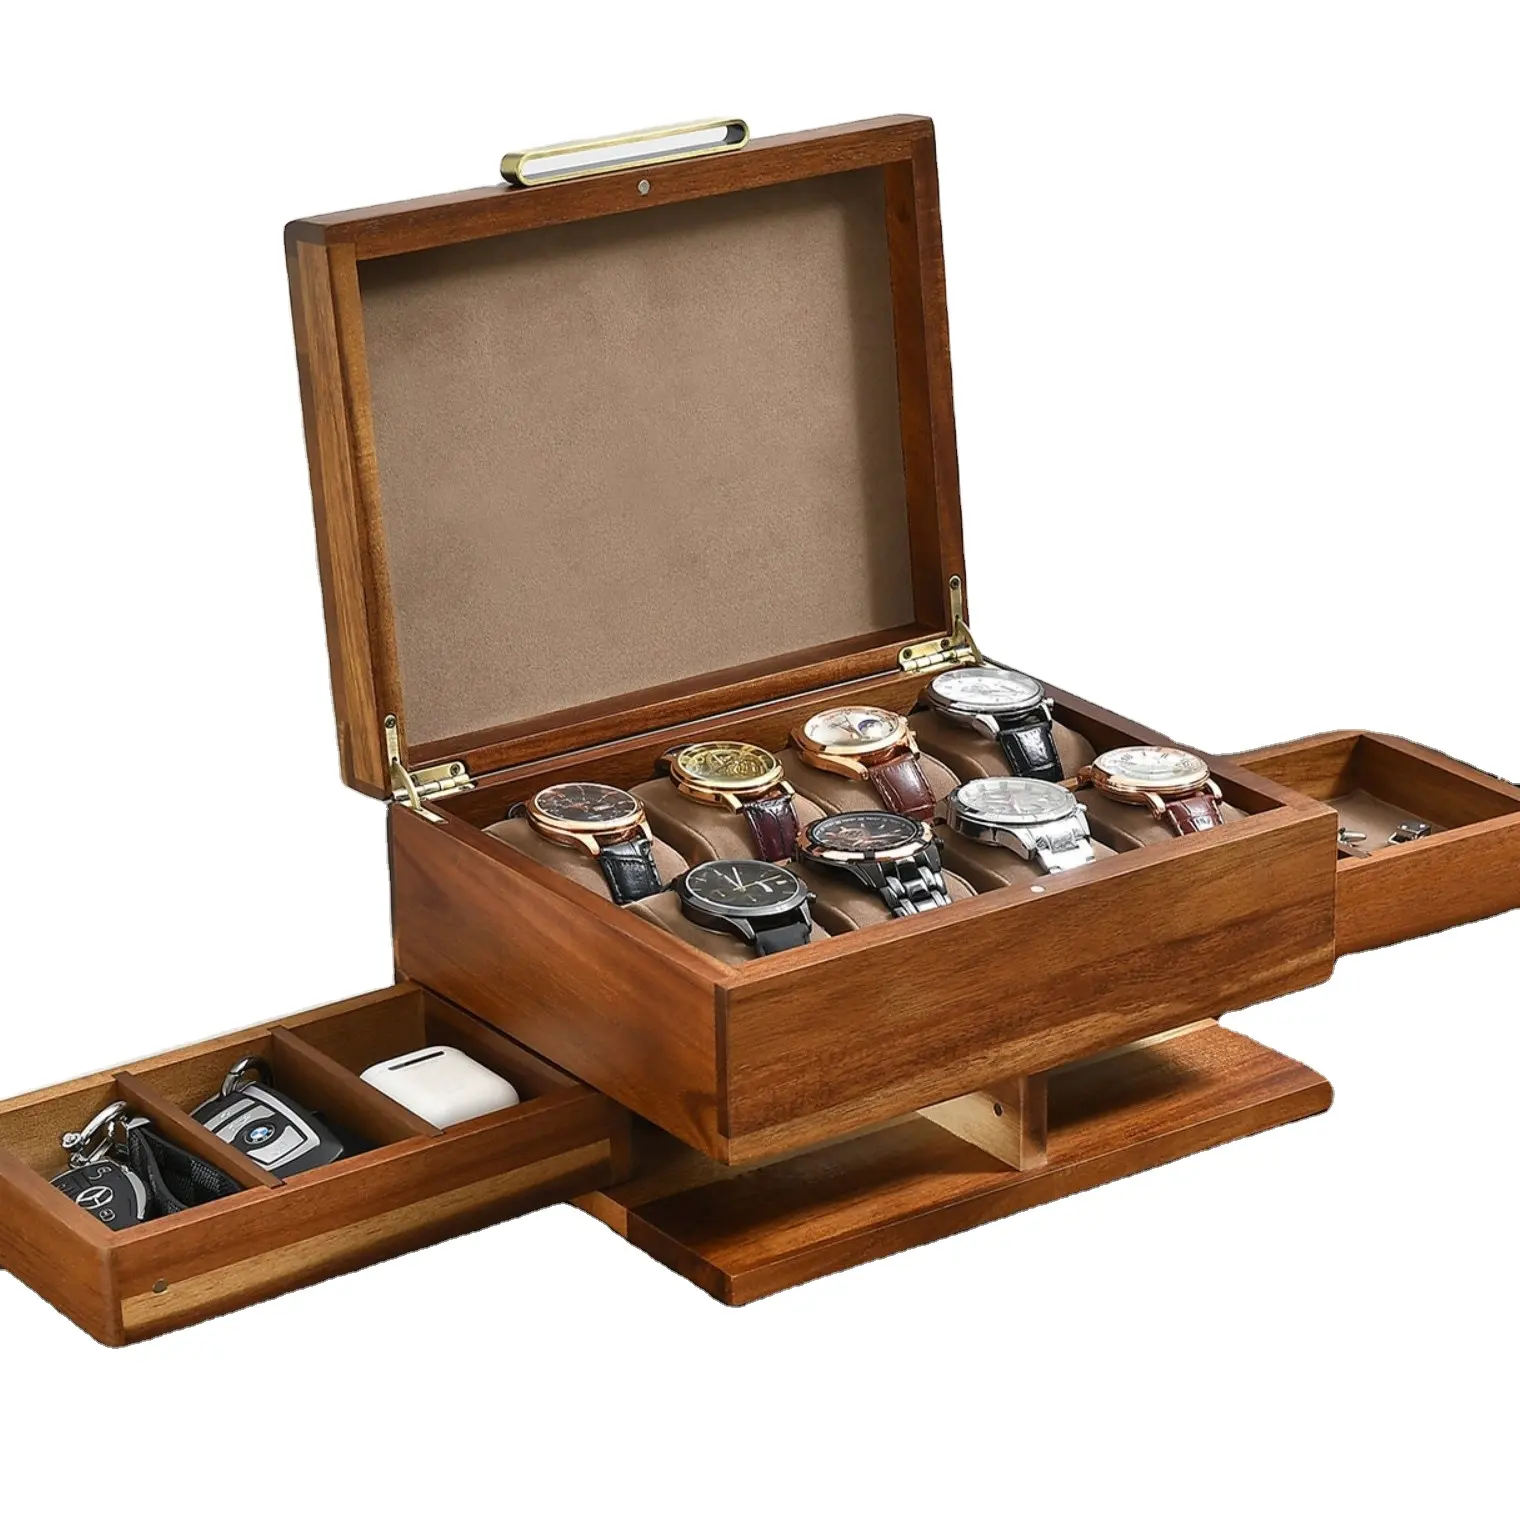 उपहार के लिए अनुकूलित परफ्यूम लकड़ी बॉक्स शिल्प उत्कीर्ण 8 स्लॉट हस्तनिर्मित डिस्प्ले ऑर्गनाइज़र सहायक उपकरण के साथ लकड़ी घड़ी बॉक्स